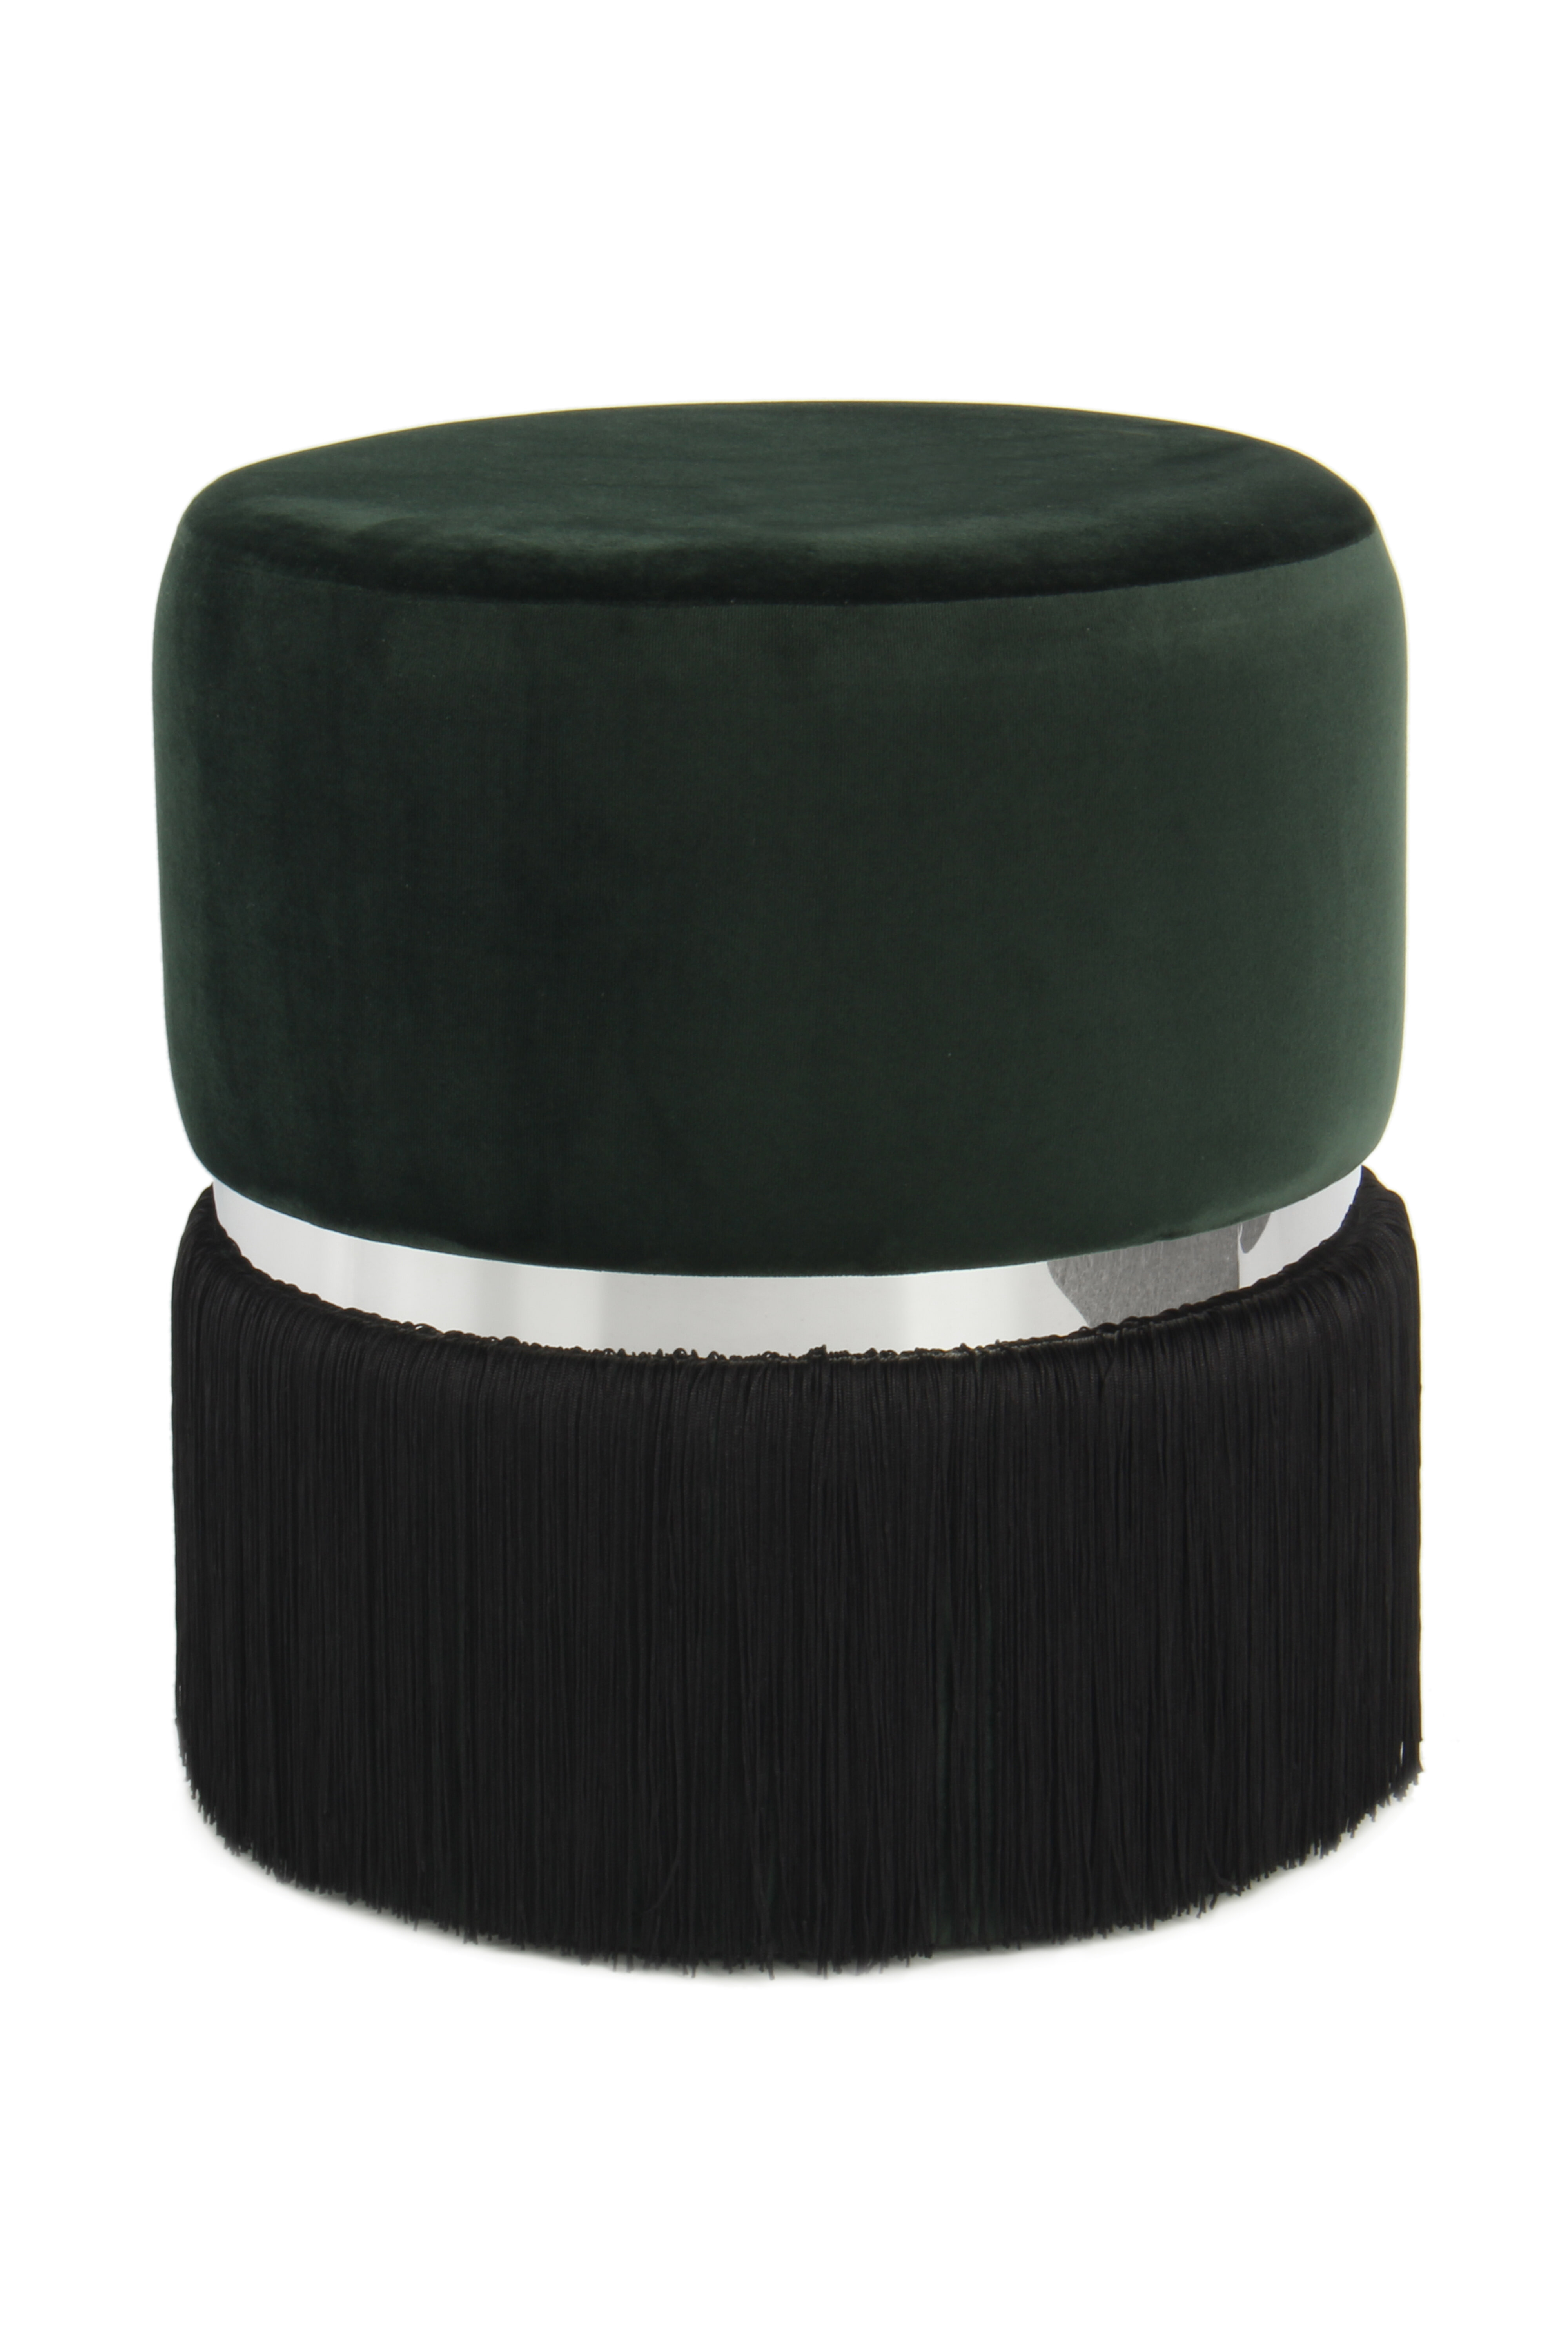 Kayoom Poef 'Rebecca' Velvet met franjes, 41cm, kleur groen / zwart